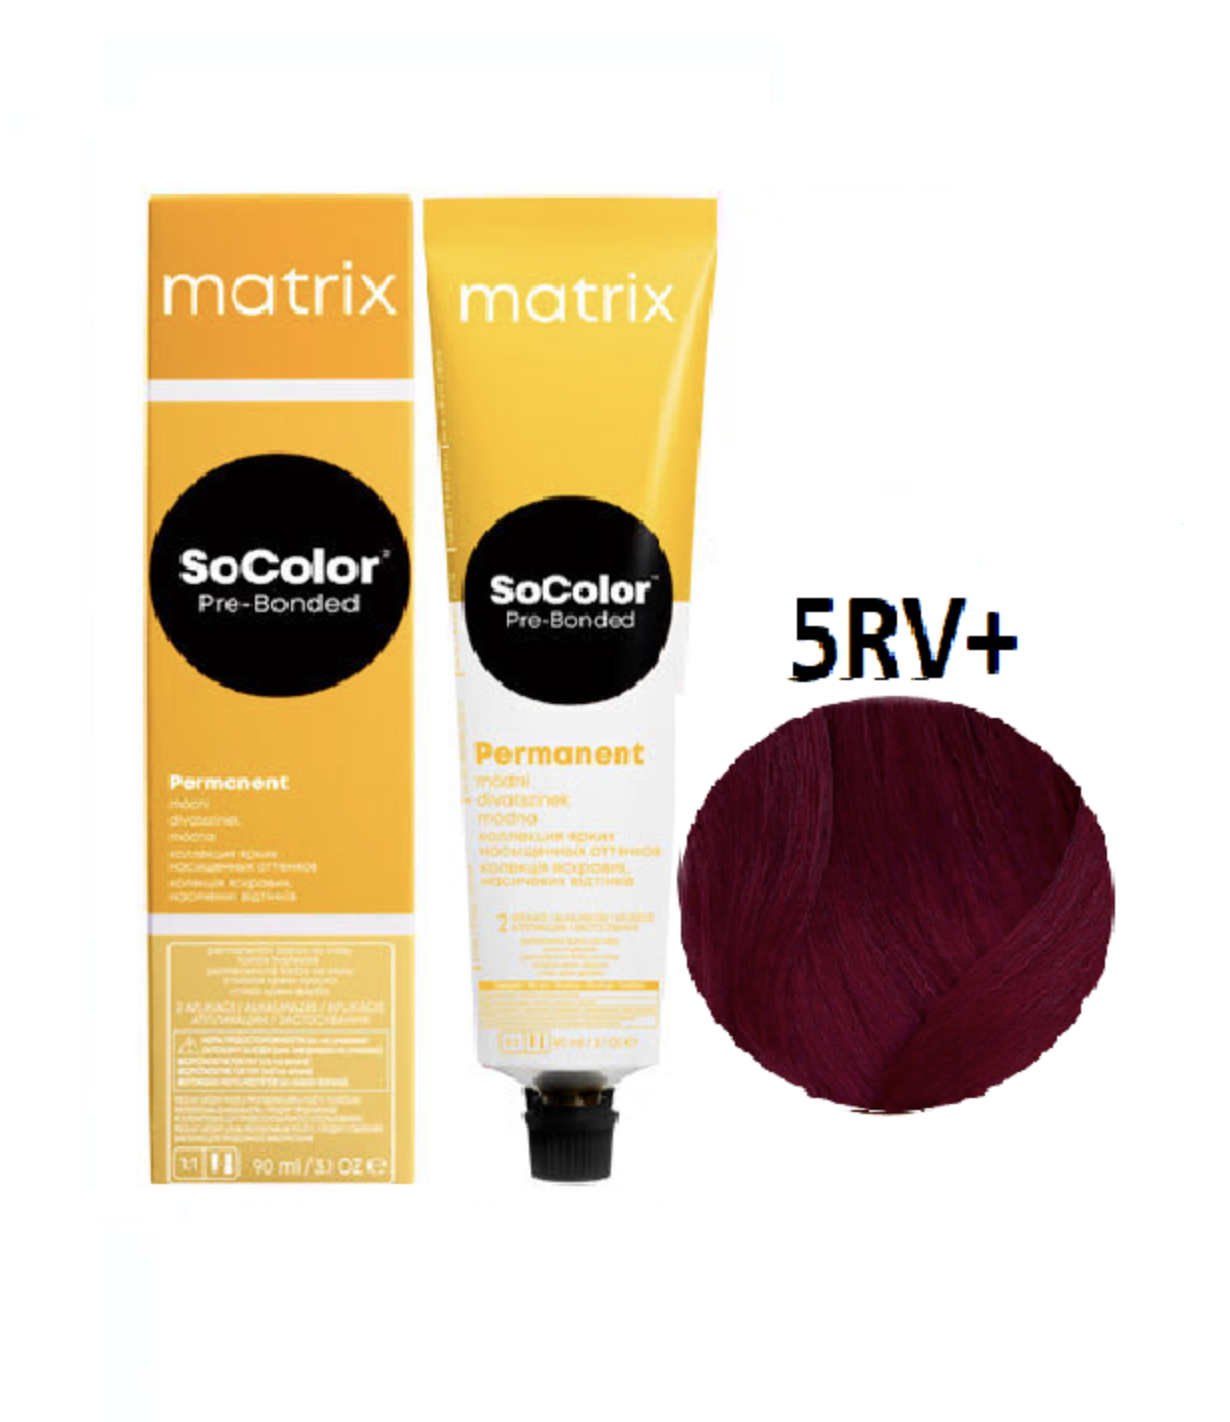   / Matrix SoColor Pre-Bonded    5RV+   - 90 